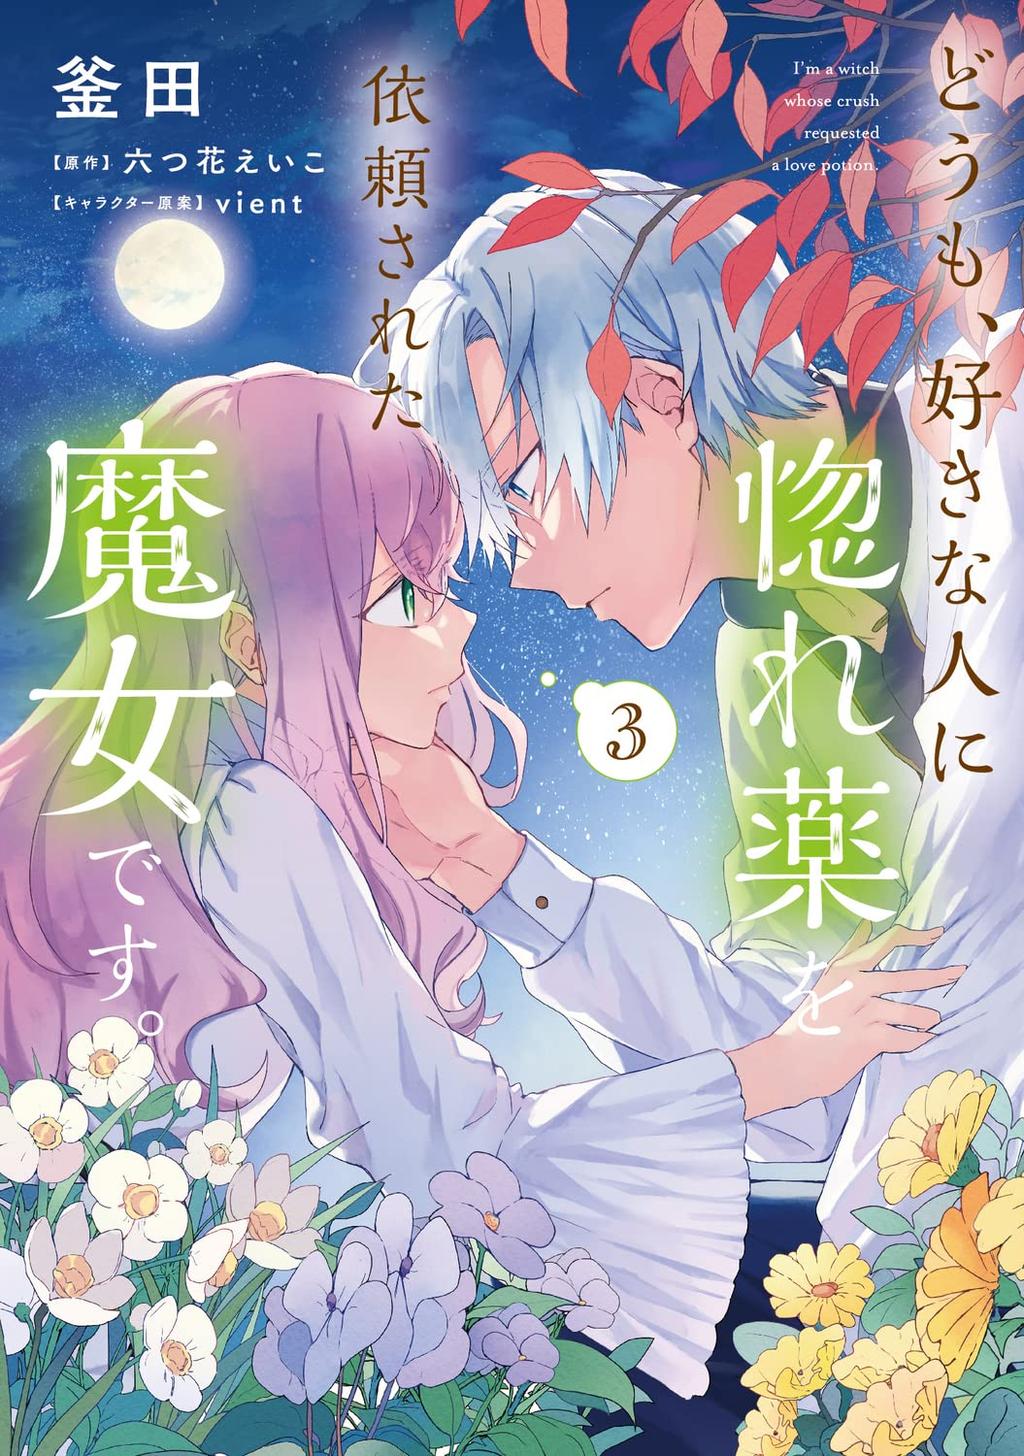 Manga Passion „hallo Ich Bin Eine Hexe And Mein Schwarm Wünscht Sich Einen Liebestrank Von Mir 9256